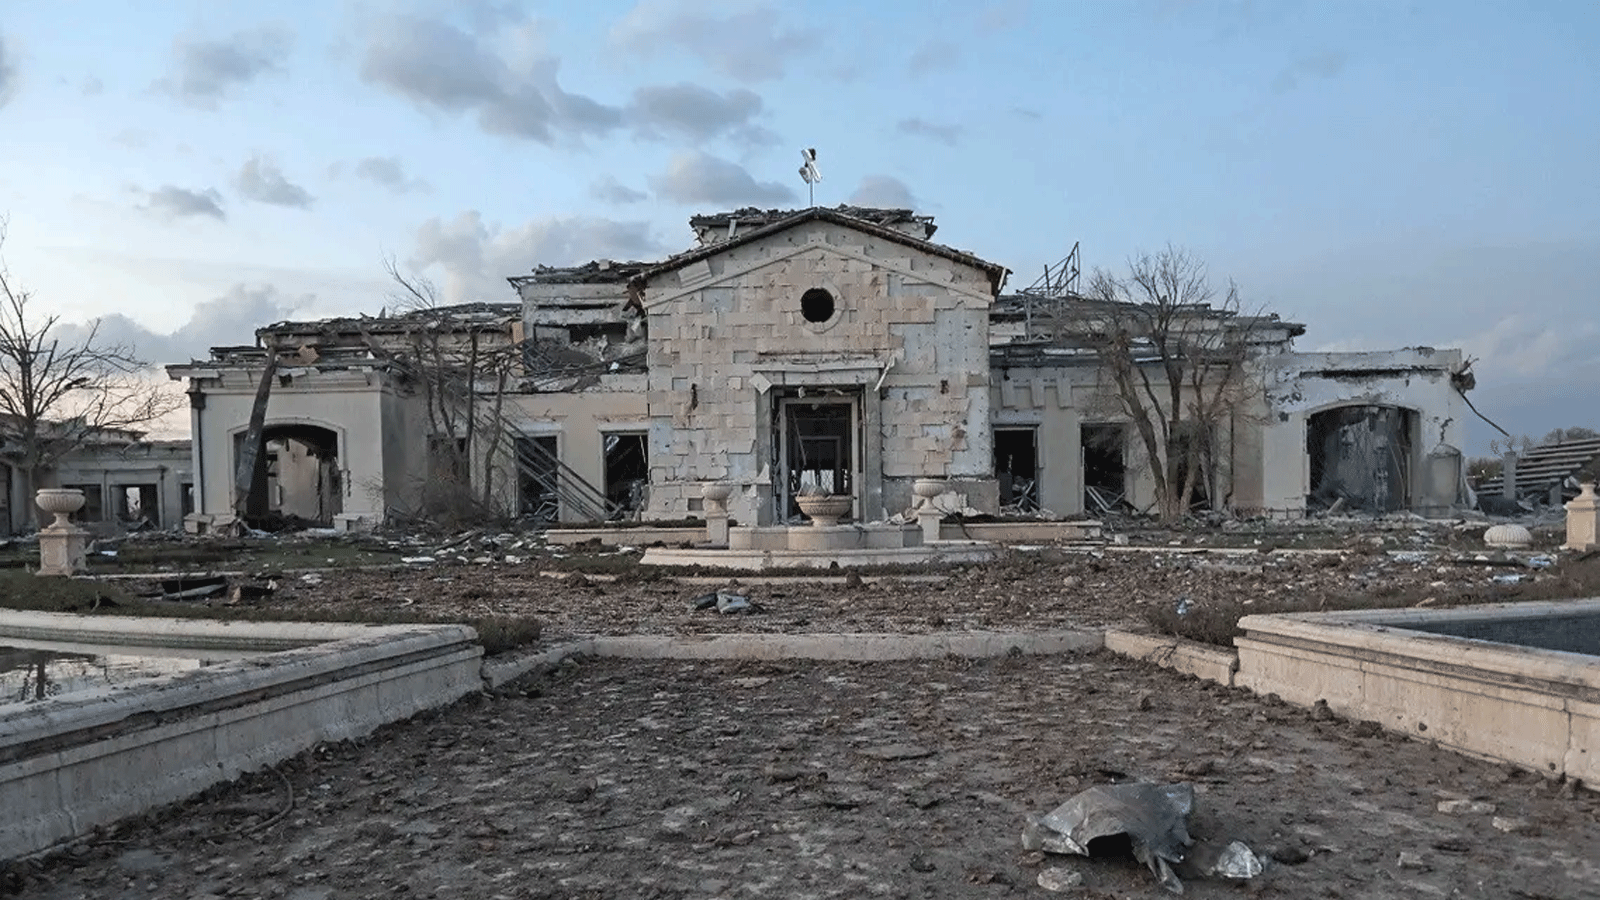 منظر عام يظهر قصرًا مدمرًا في أعقاب هجوم ليلي في أربيل، عاصمة منطقة الحكم الذاتي الكردية شمال العراق، في 13 مارس / آذار 2022.